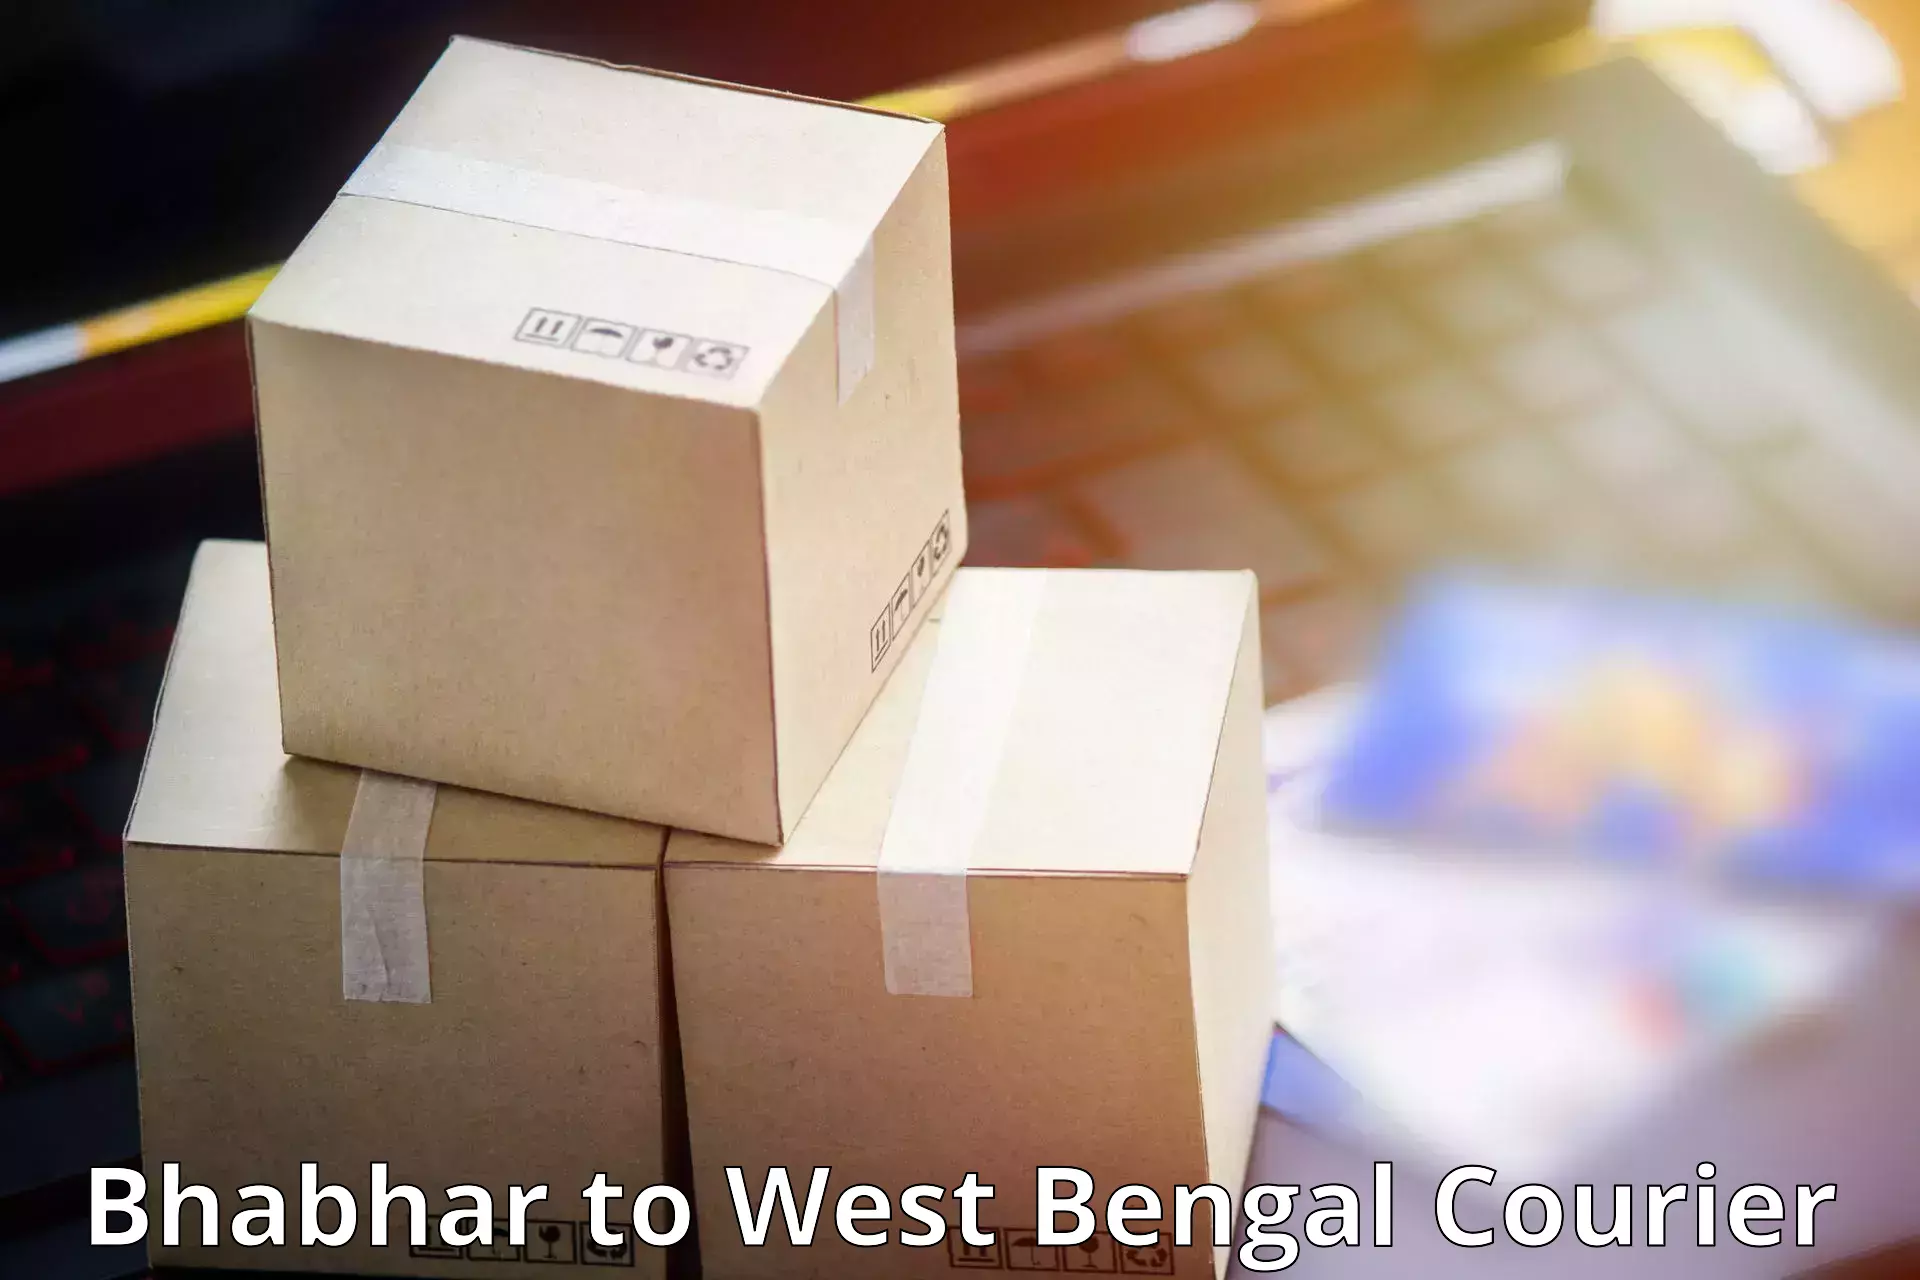 Custom courier packages Bhabhar to Haldia port